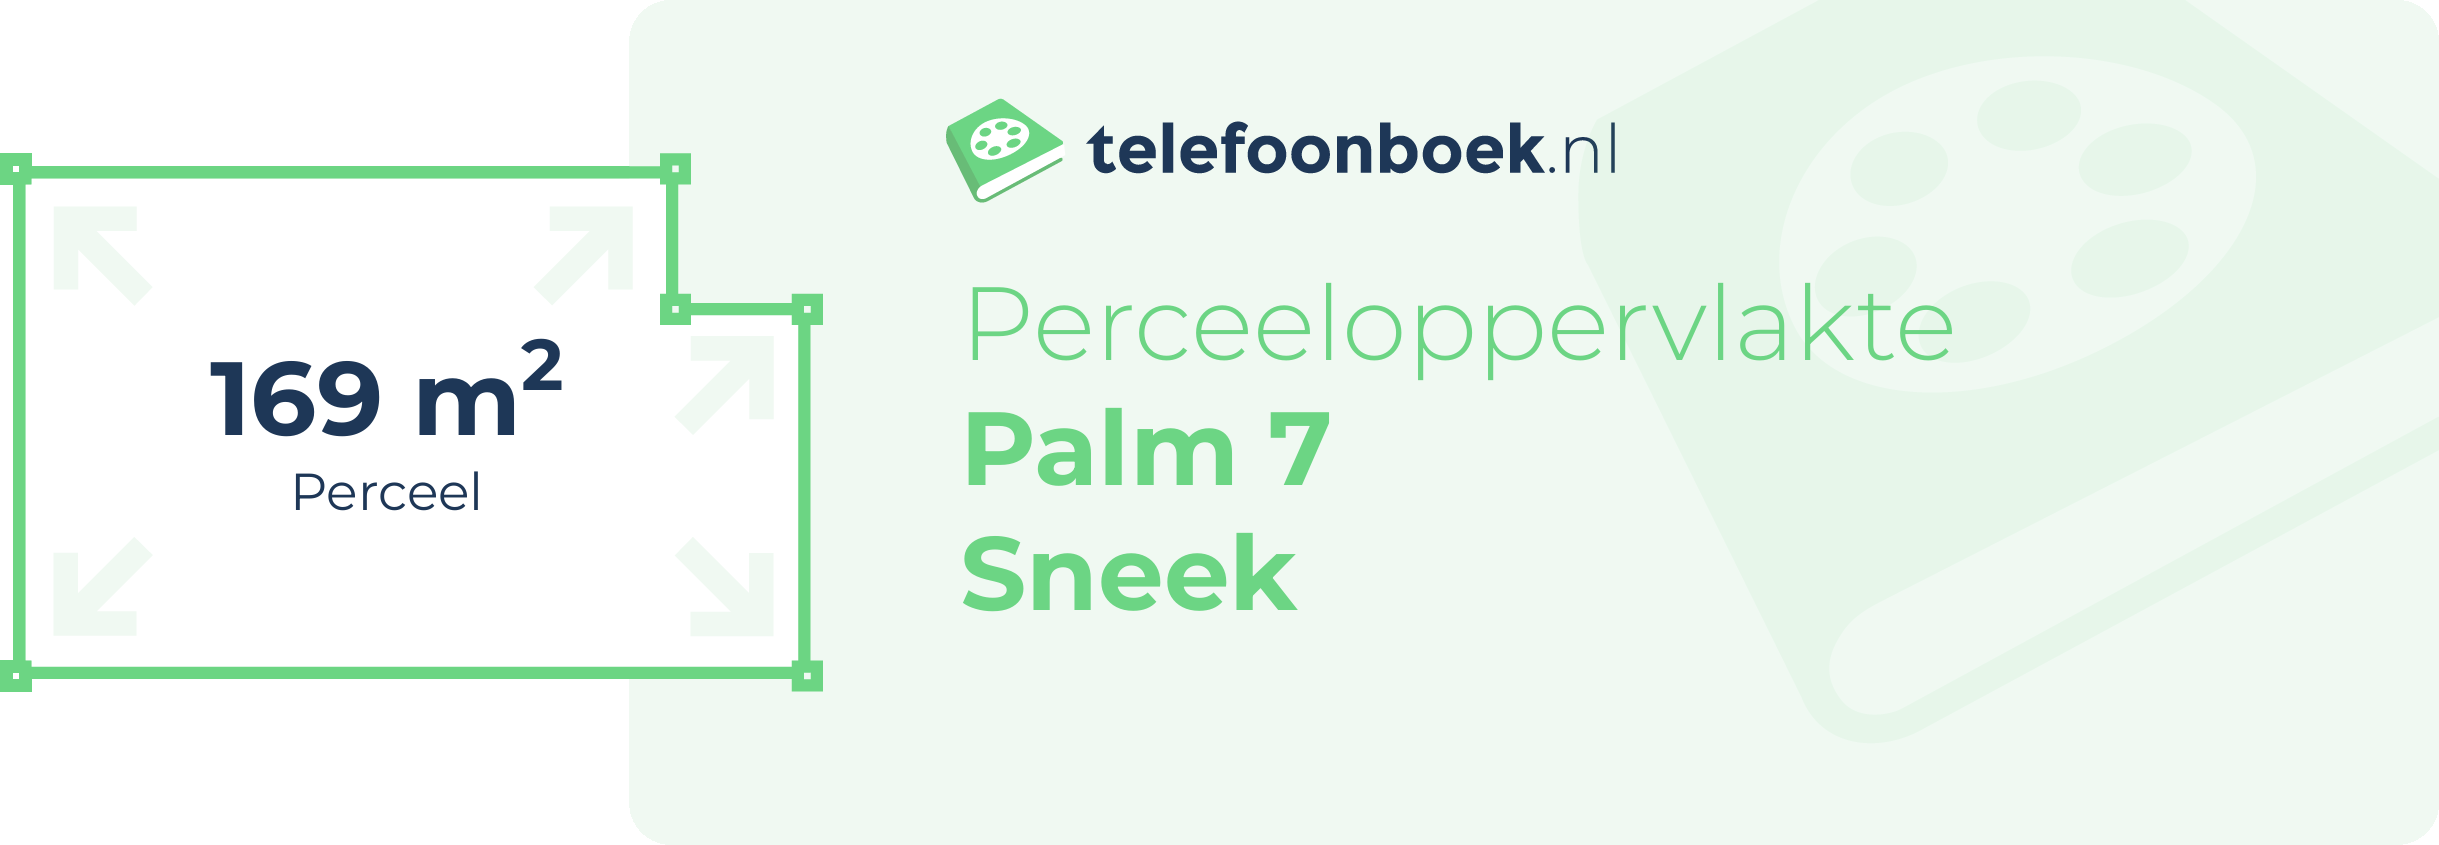 Perceeloppervlakte Palm 7 Sneek